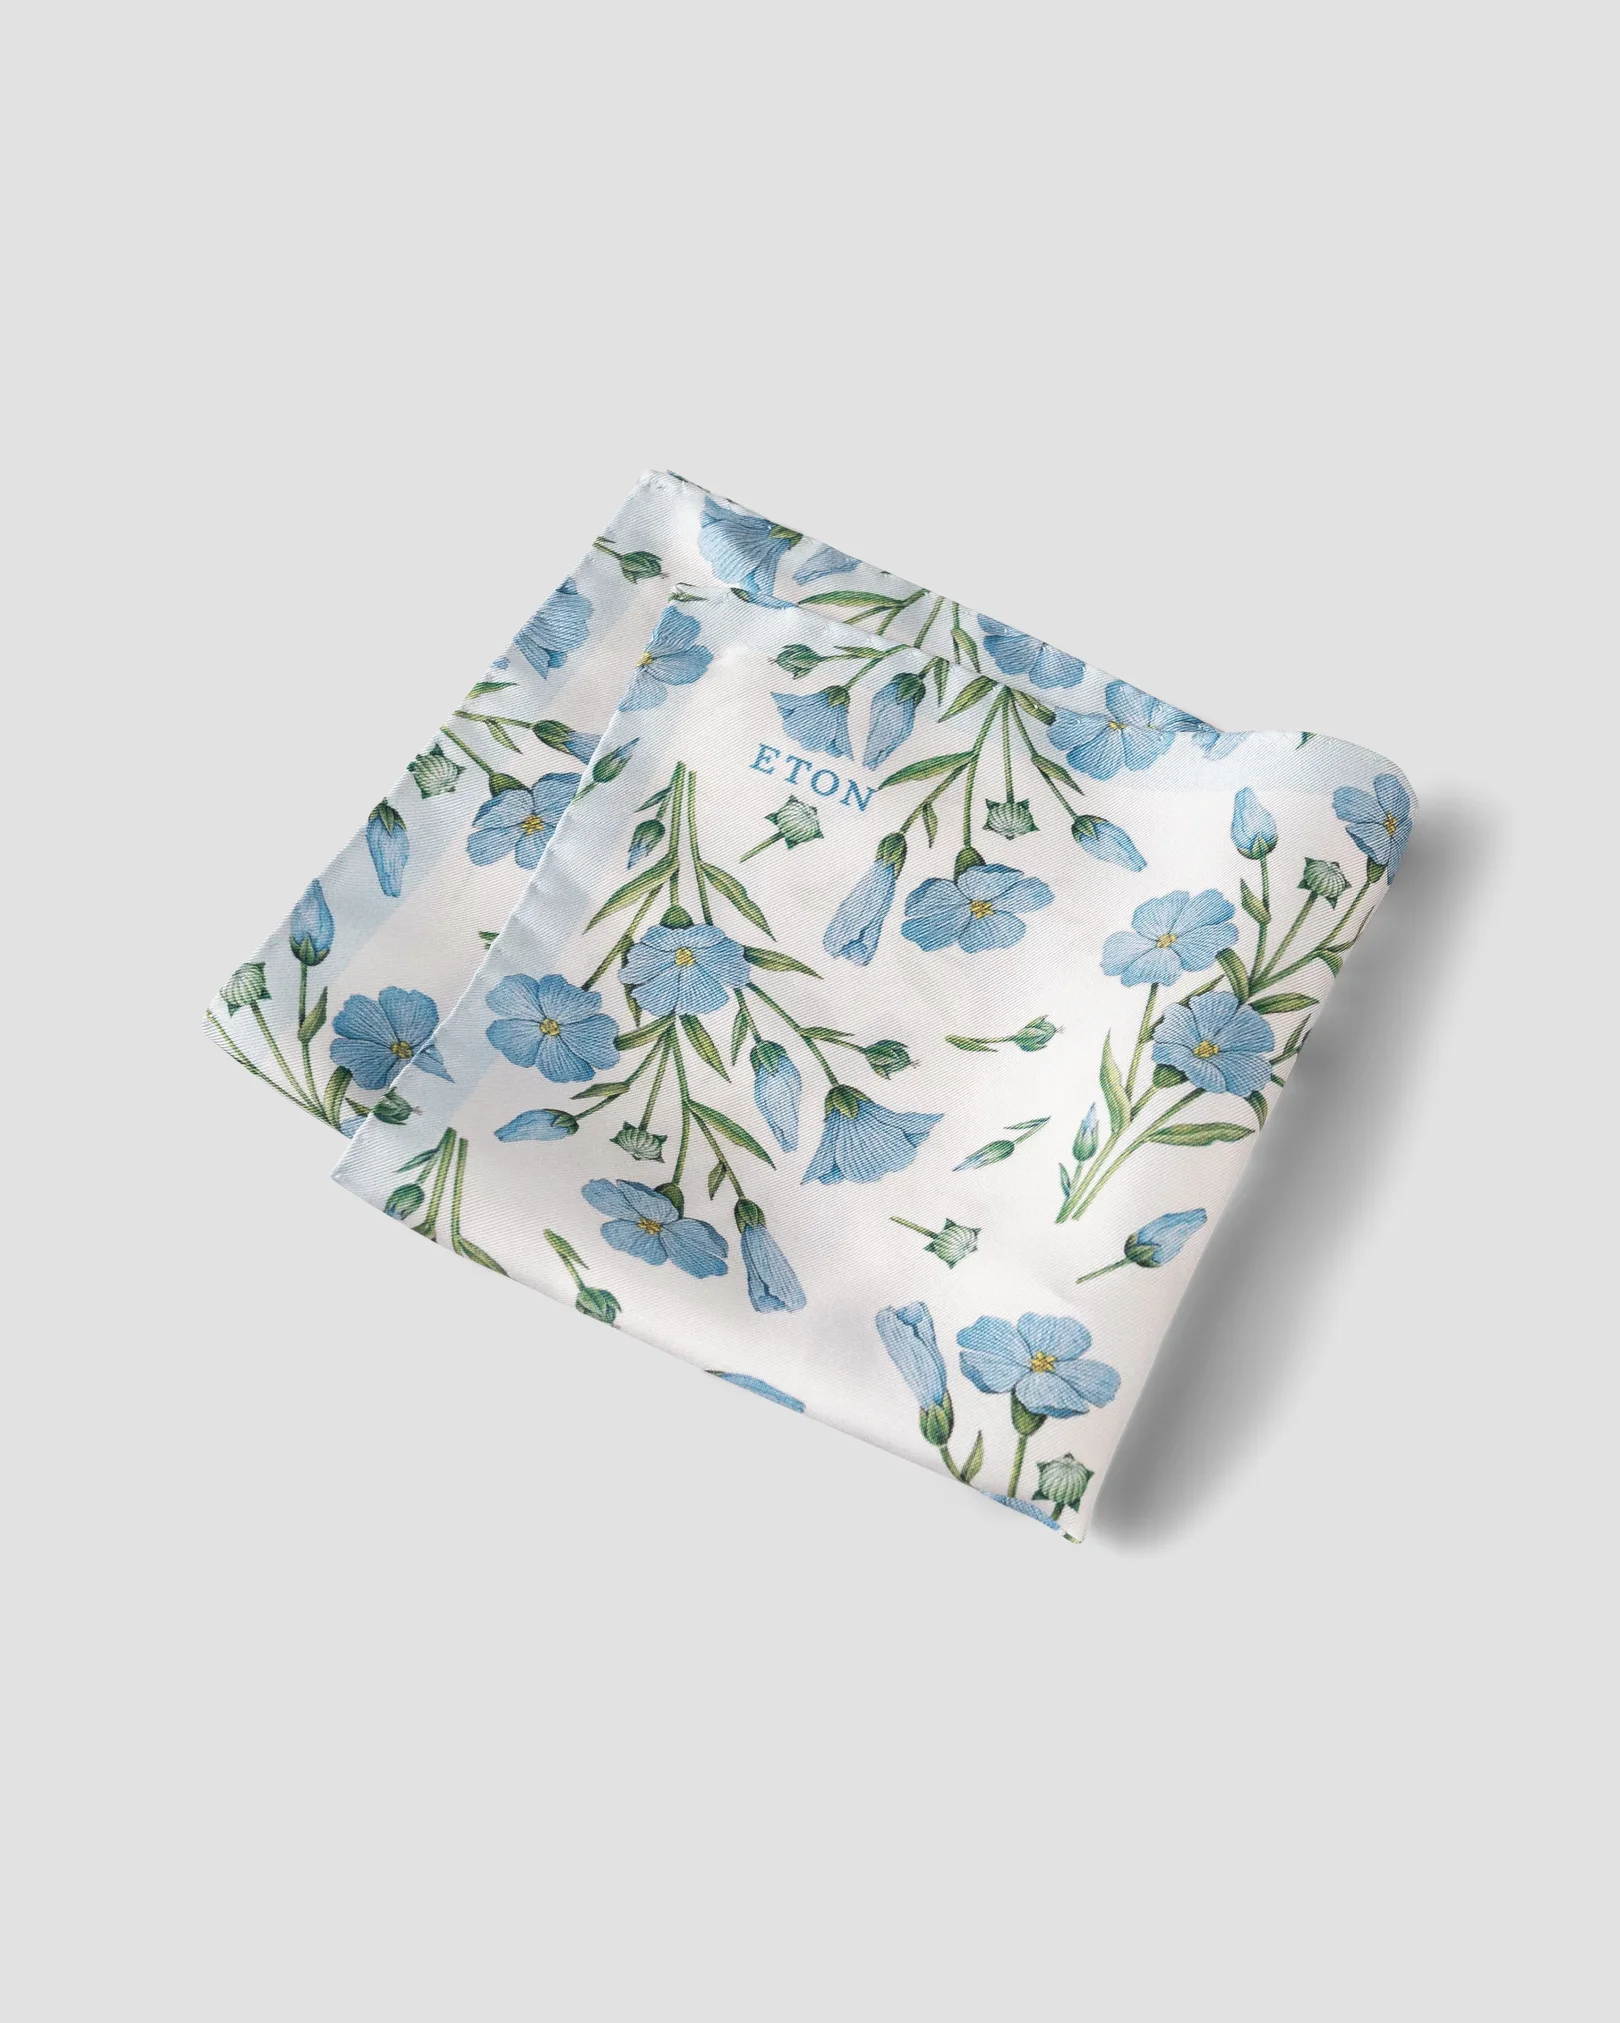 Eton - stylish floral pocket square